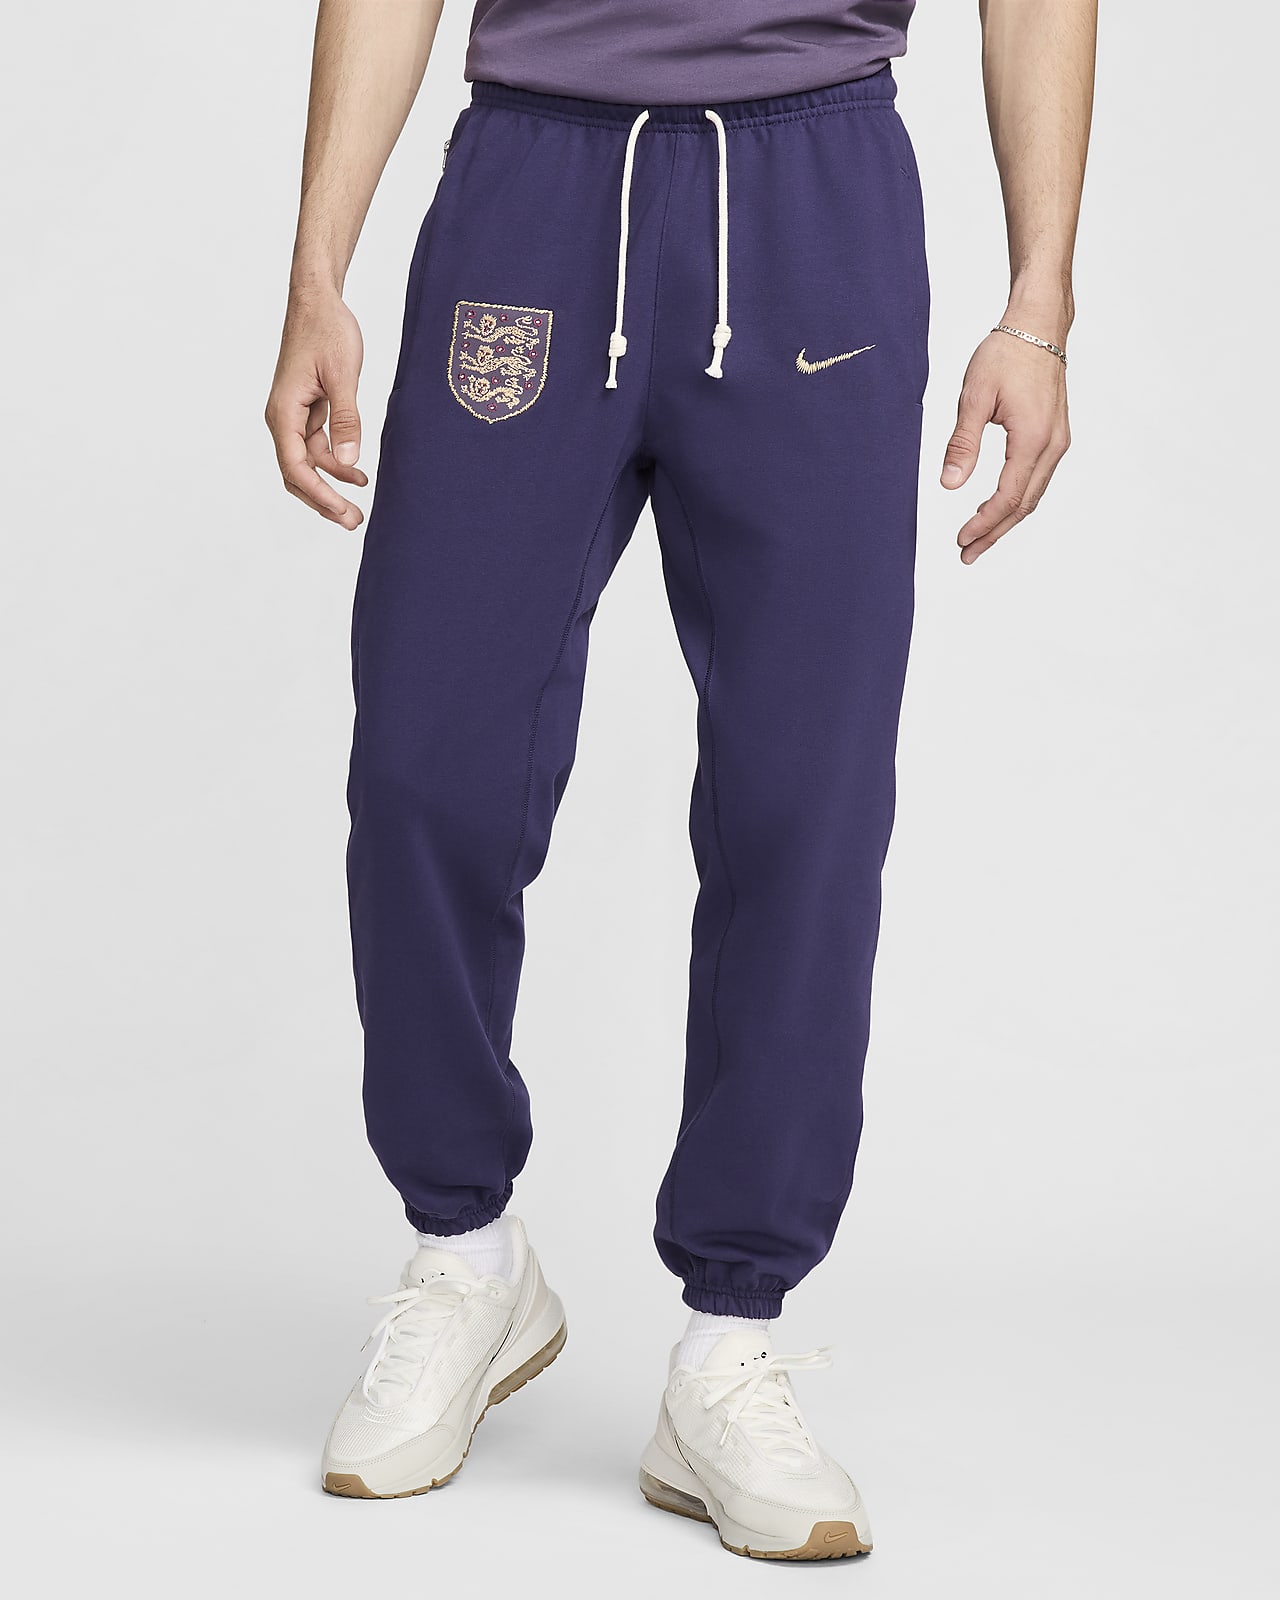 England Standard Issue Nike fotballbukse til herre